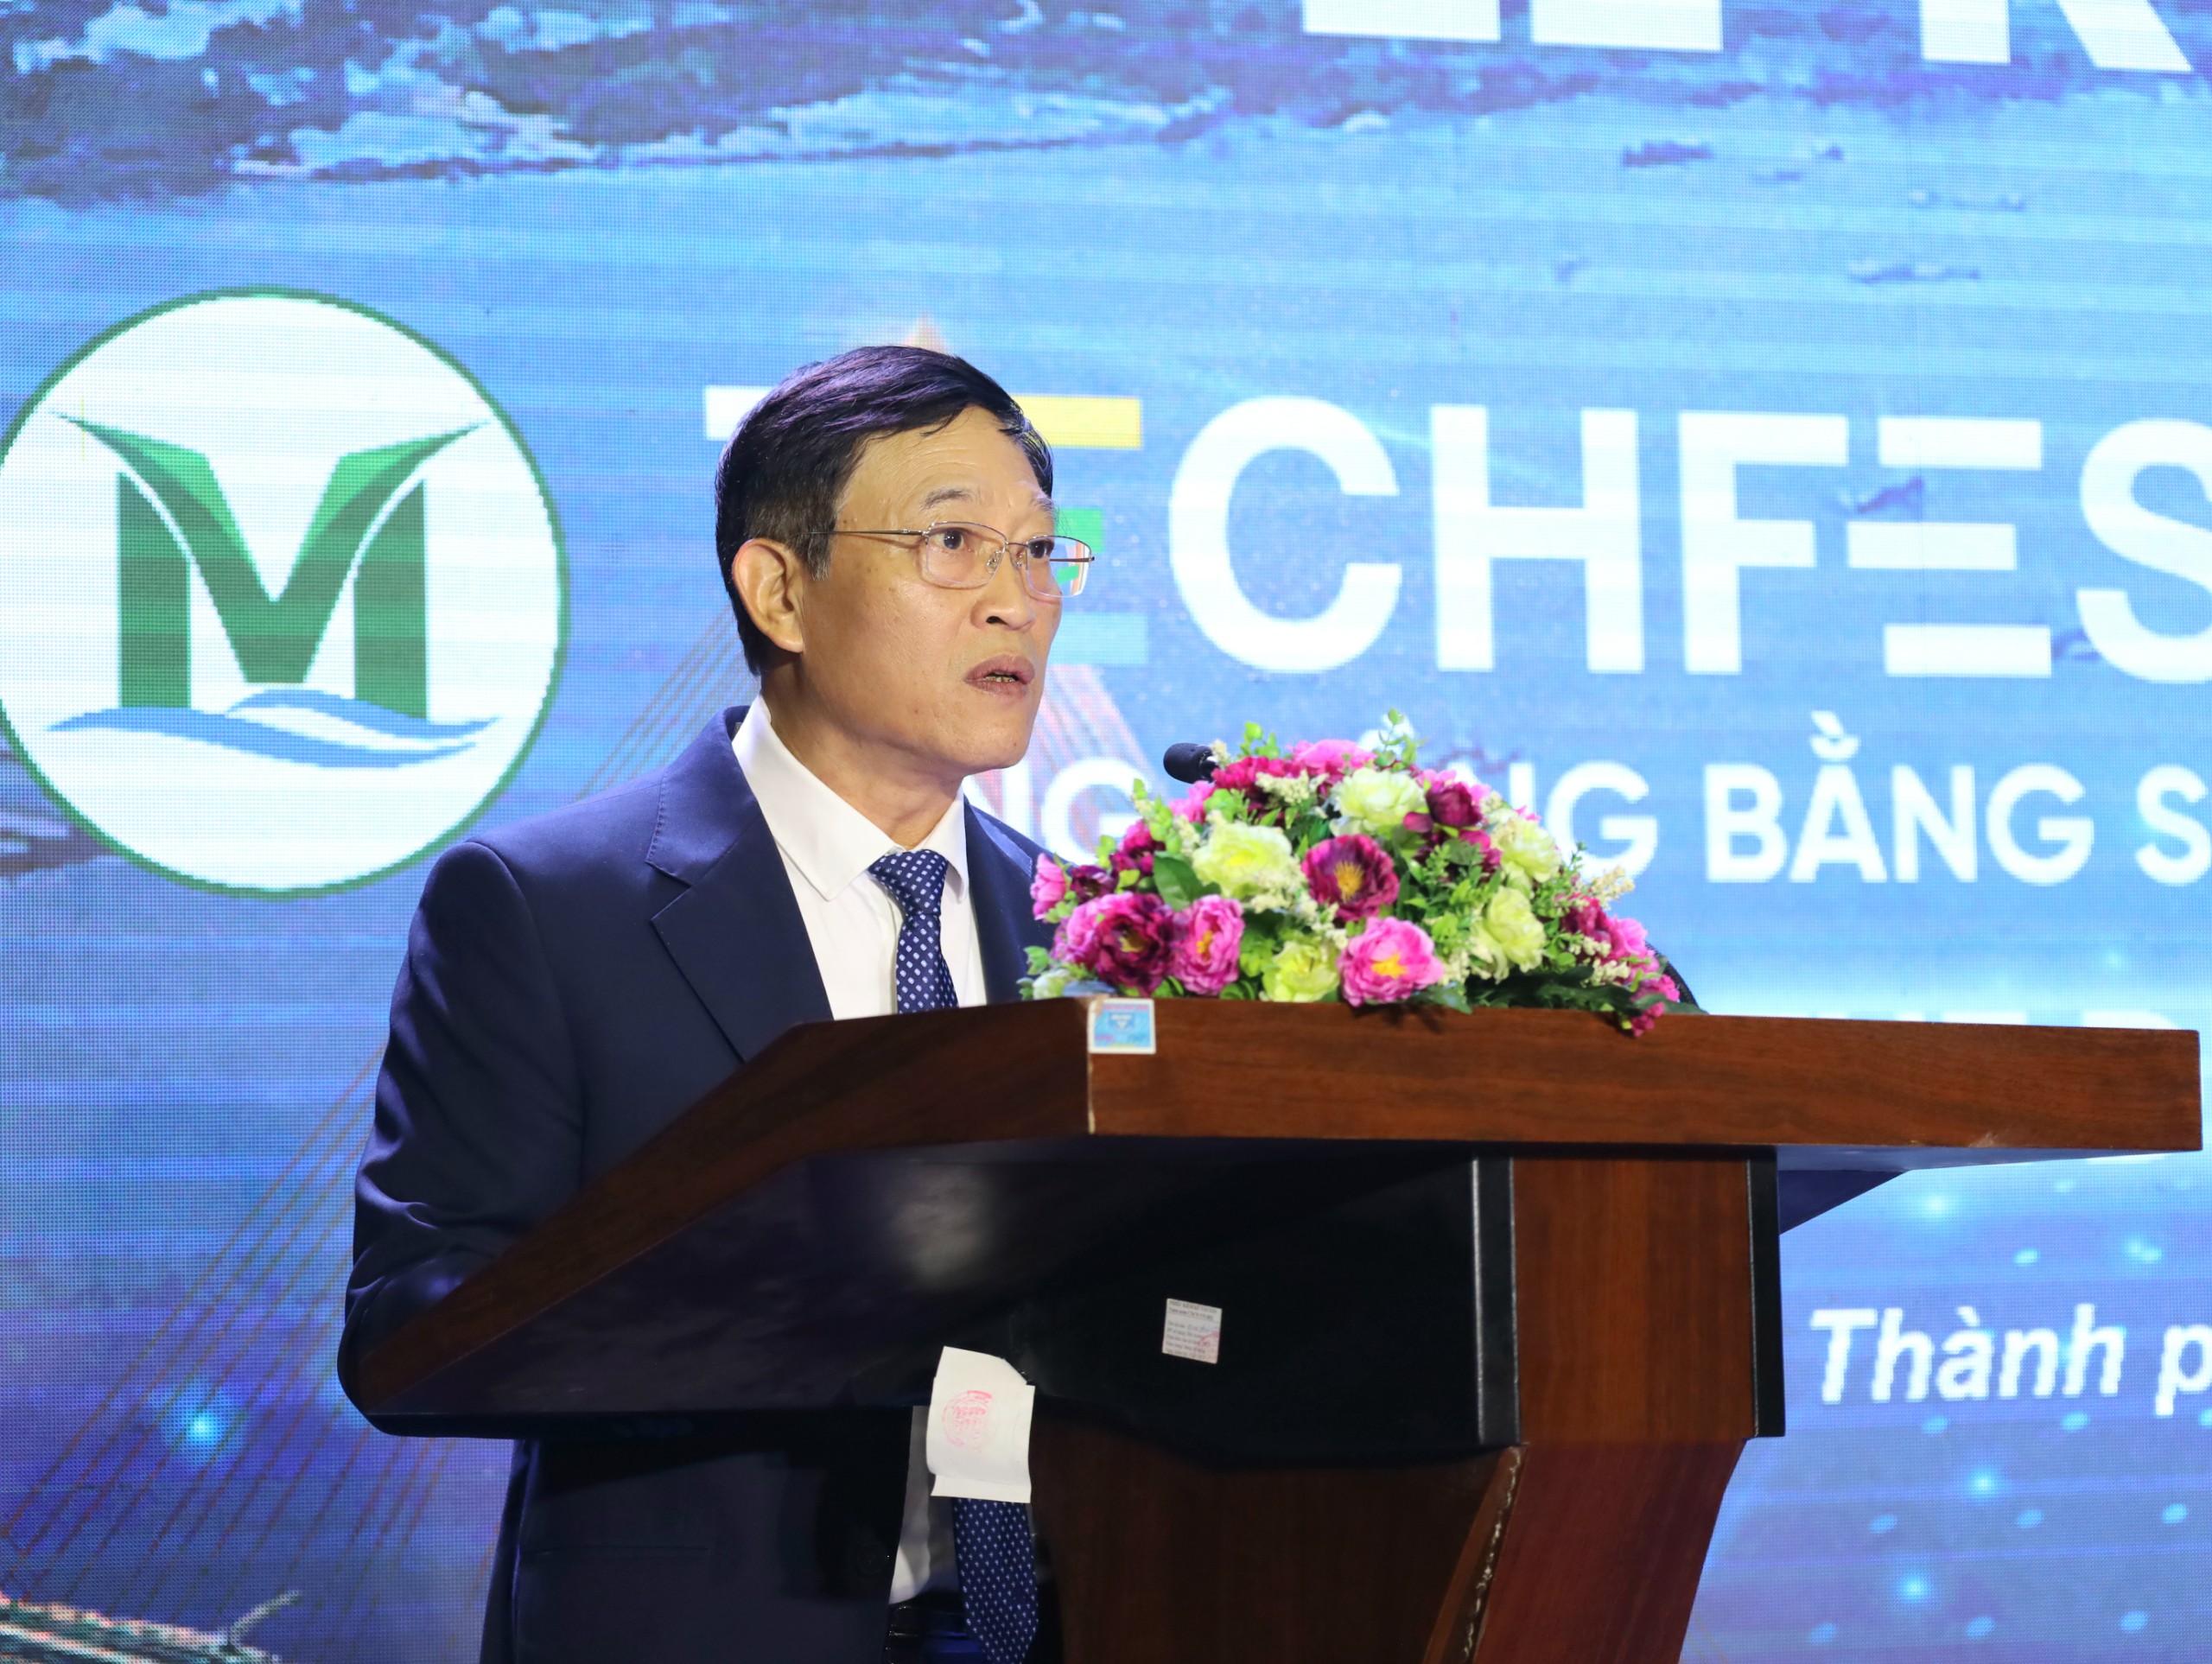 Ông Trần Văn Tùng - Thứ trưởng Bộ Khoa học & Công nghệ phát biểu khai mạc ngày hội.